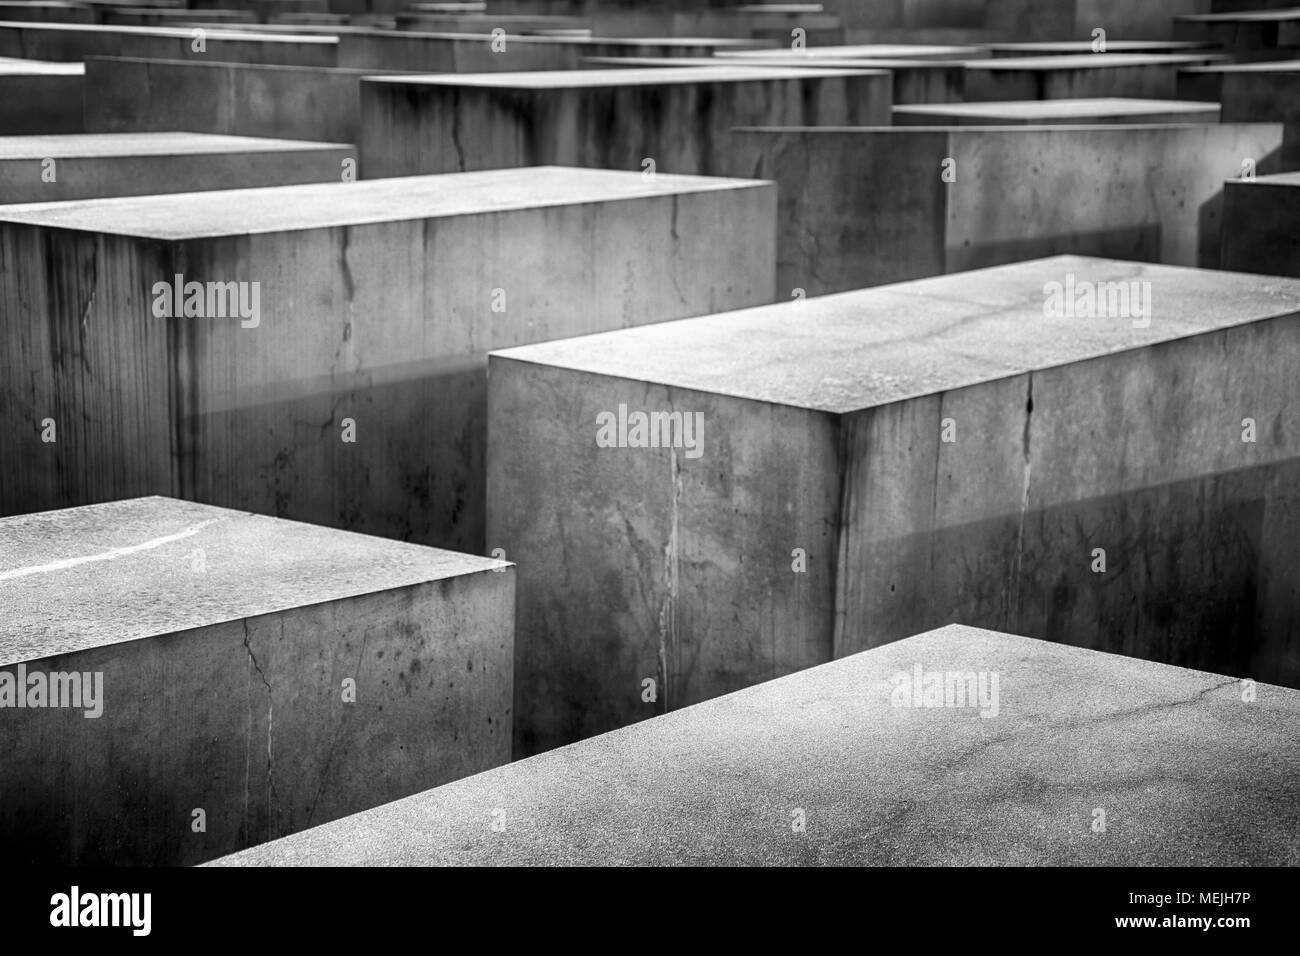 El memorial del holocausto en Berlín. Foto de stock